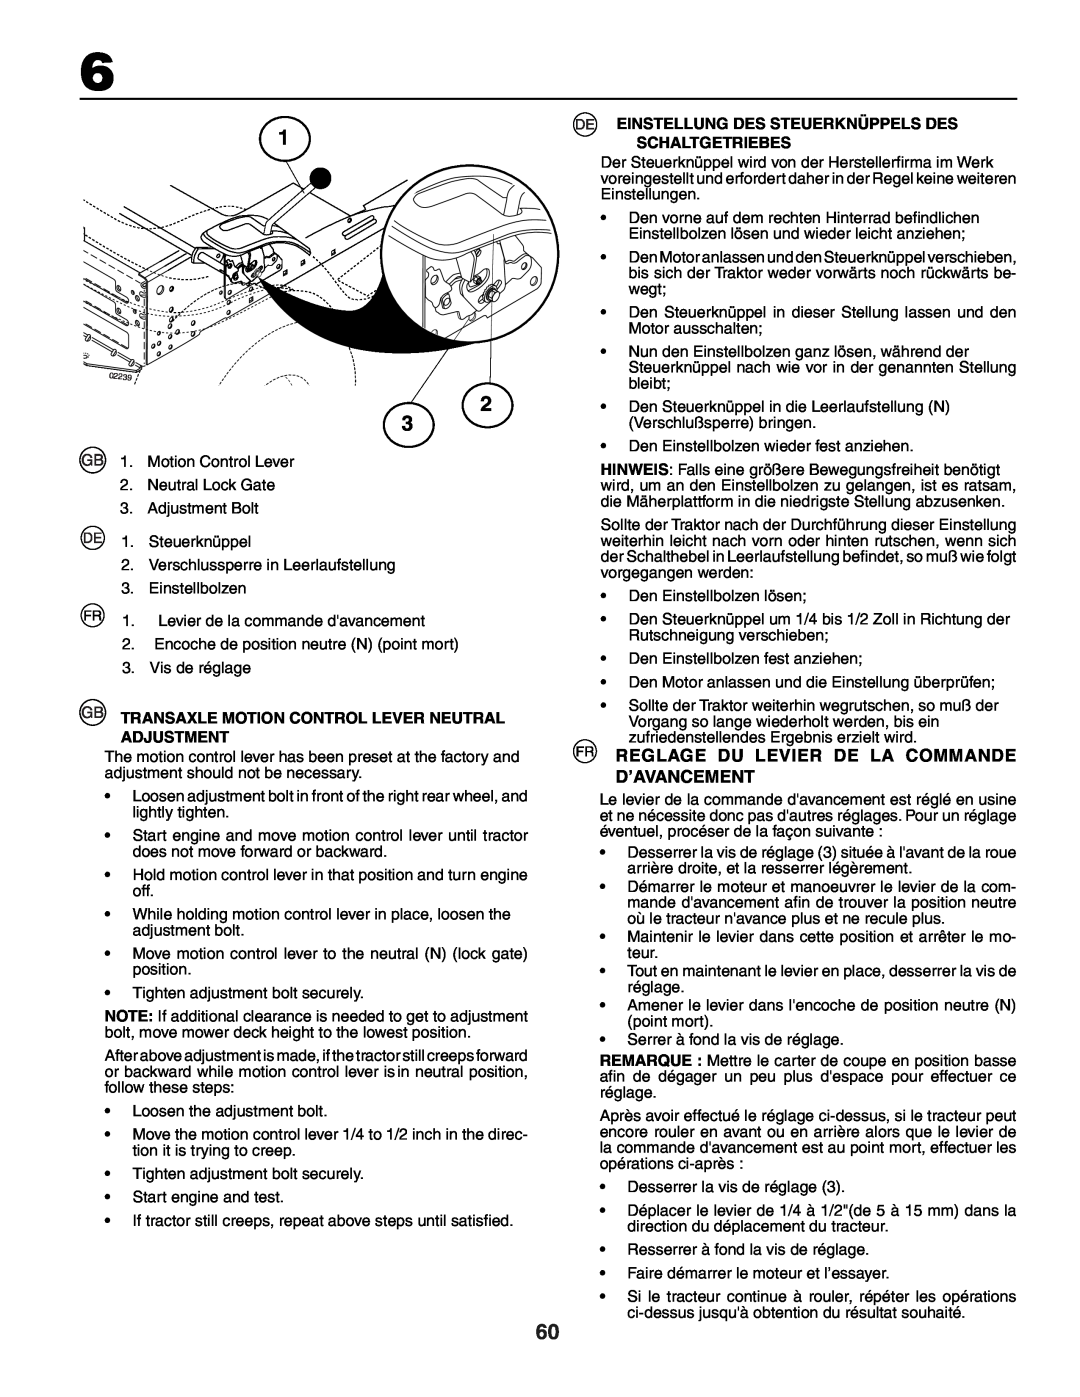 Jonsered LT2118A Reglage Du Levier De La Commande D’Avancement, Transaxle Motion Control Lever Neutral Adjustment 